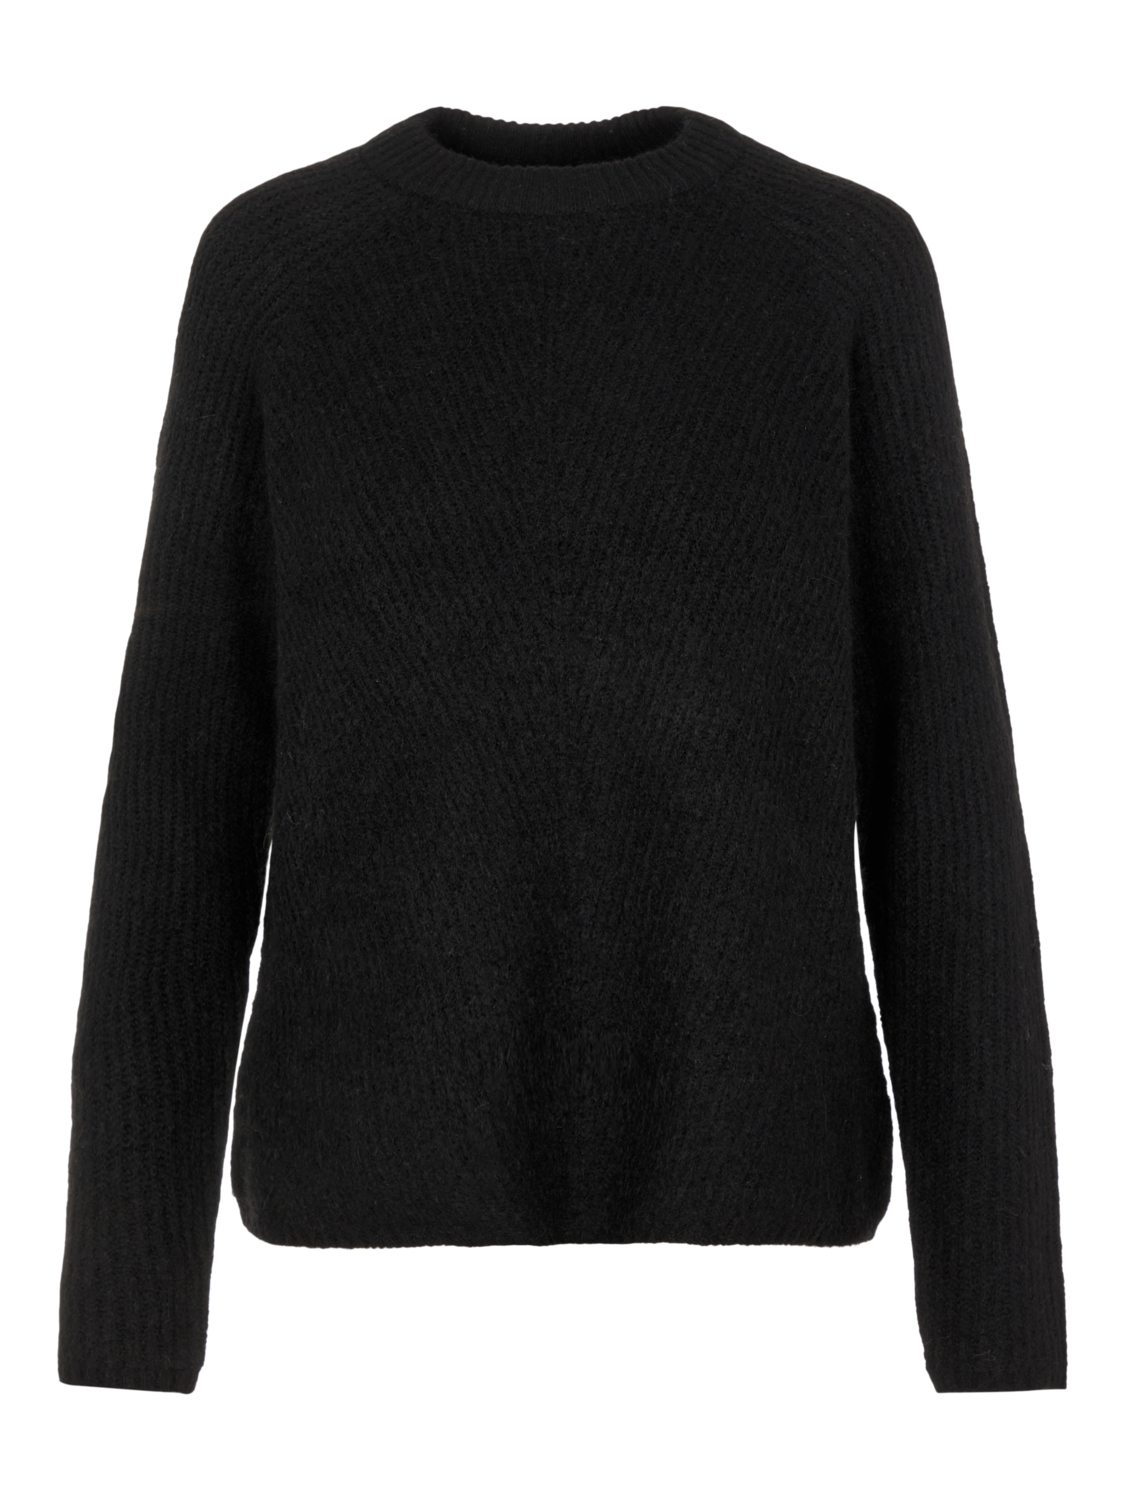 Odzież Kobiety Y.A.S Sweter Alva w kolorze Czarnym 